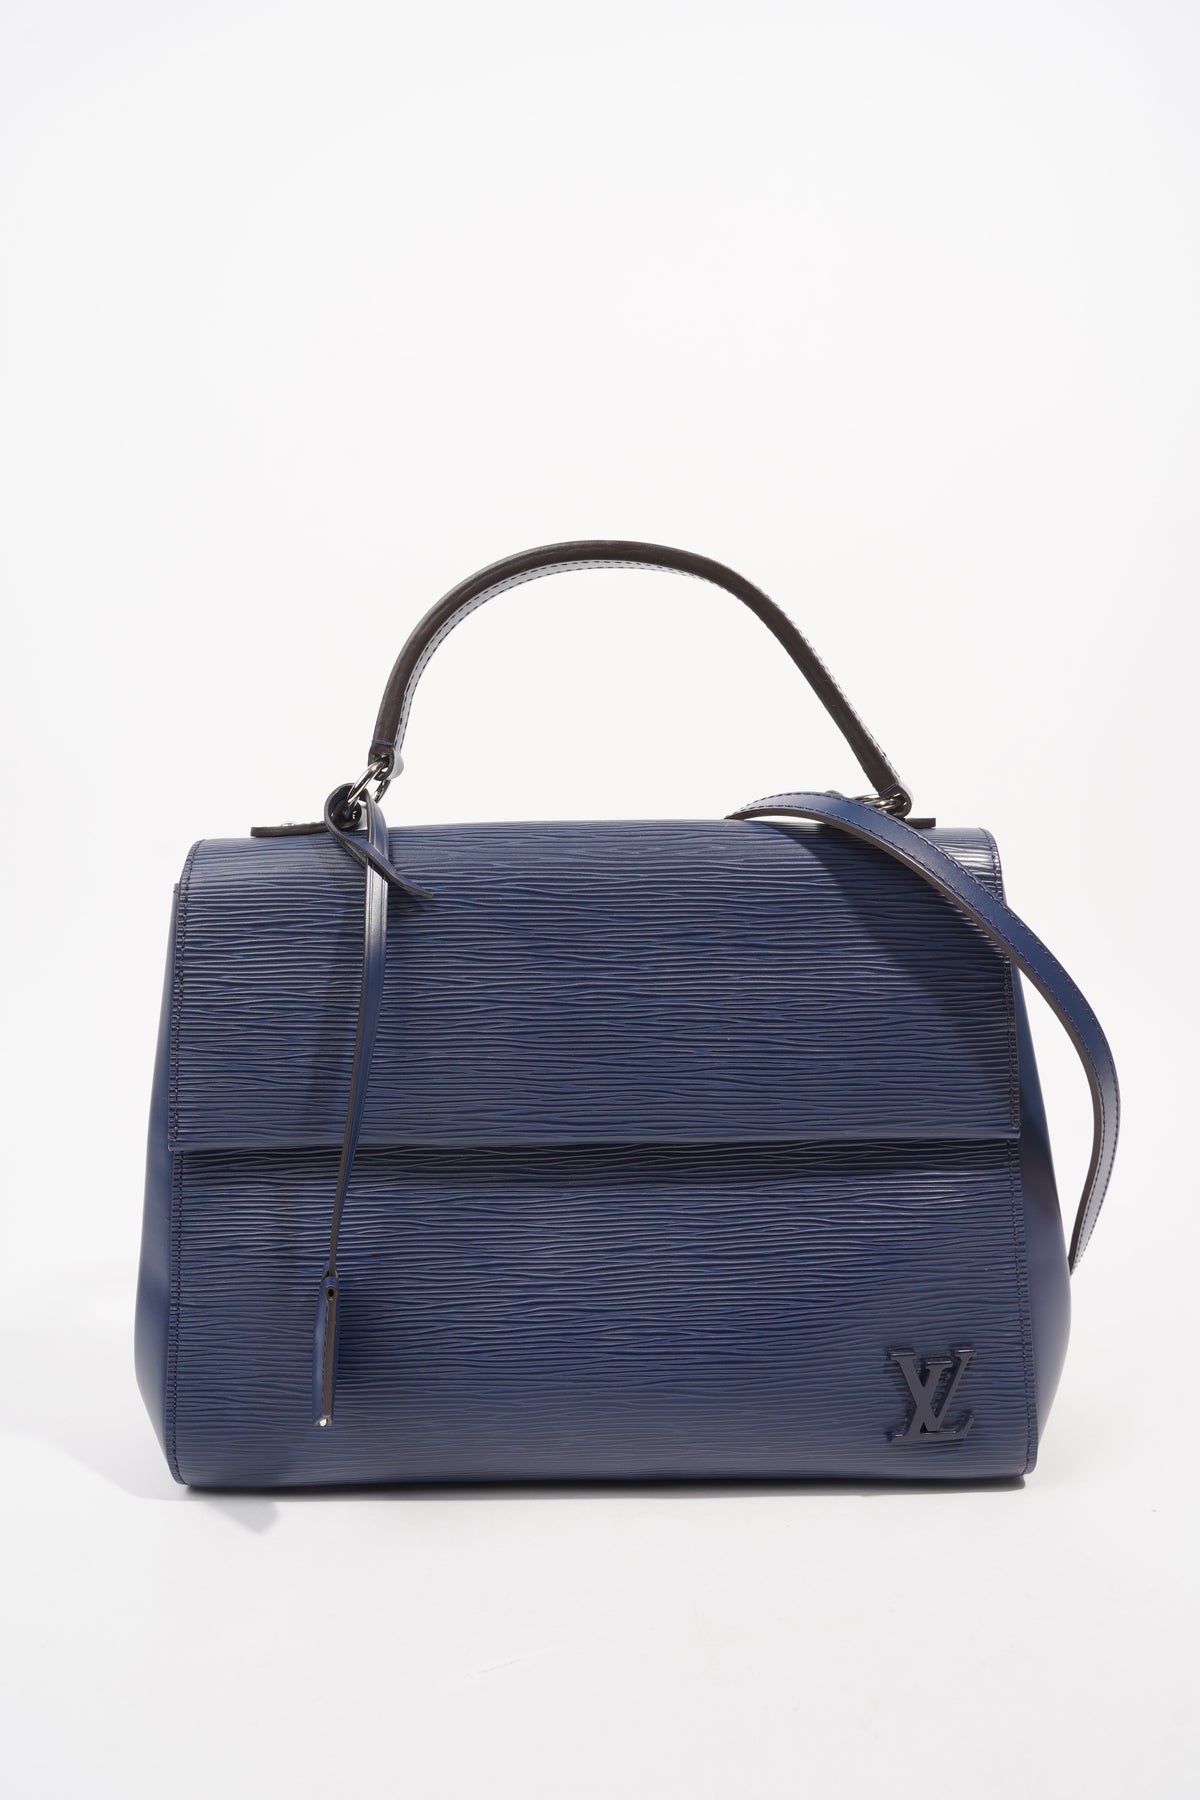 Louis Vuitton Cluny MM Epi Leather Satchel Bag Coral